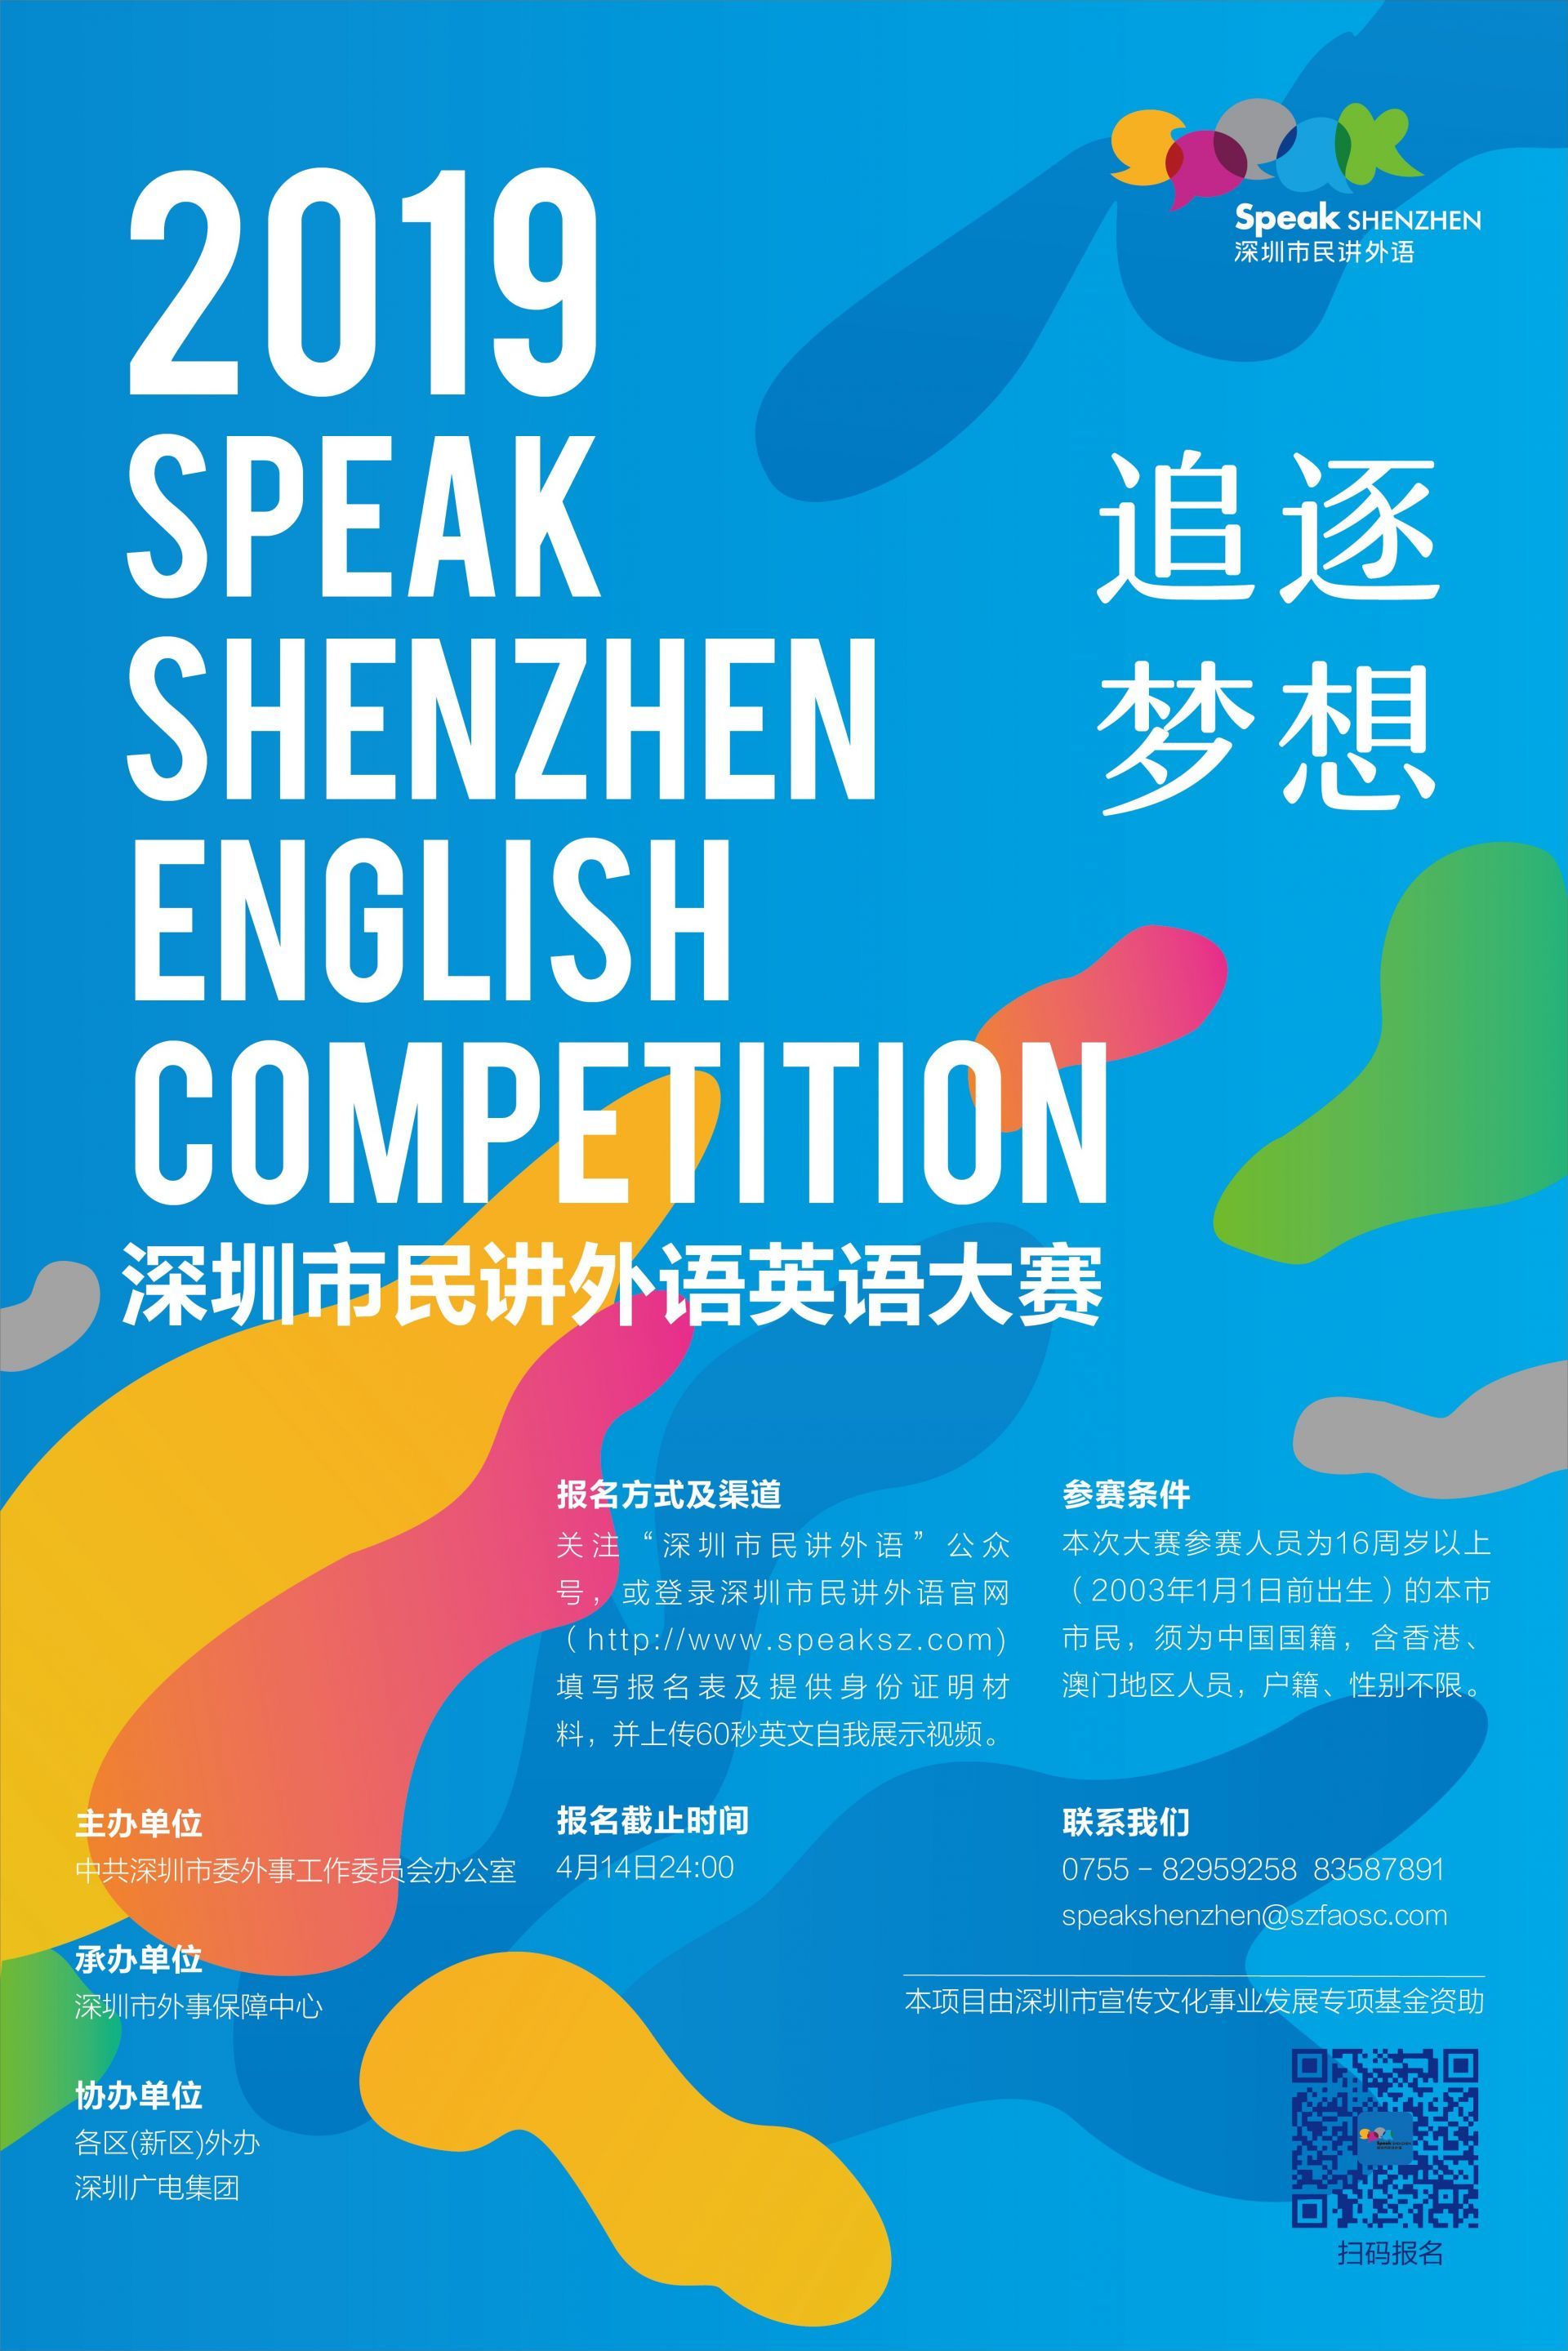 2019深圳市民讲外语英语大赛宣传海报用世界语言讲好深圳故事,让